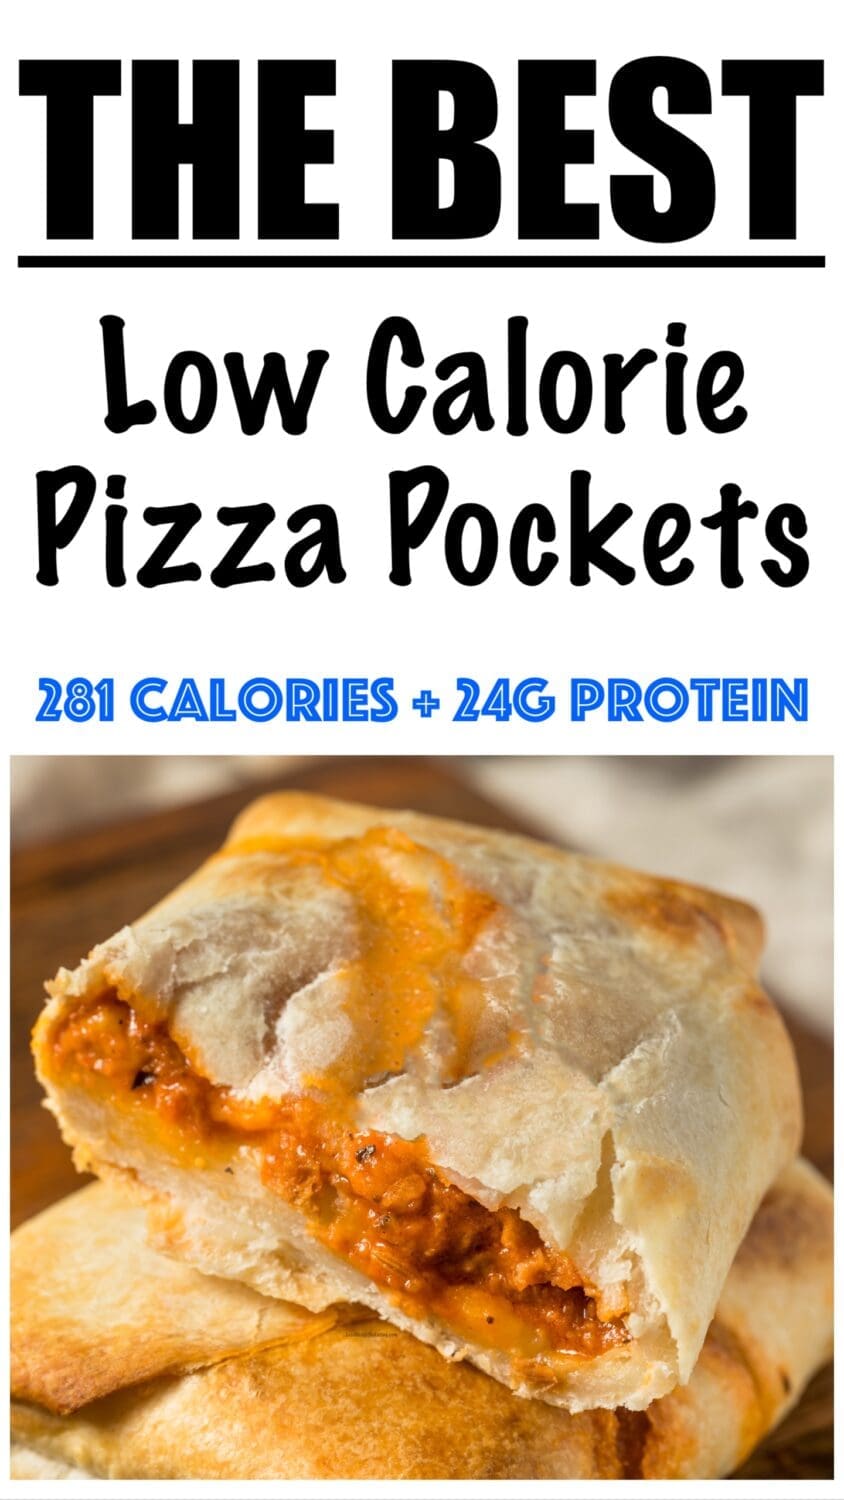 Low Calorie Pizza Pockets